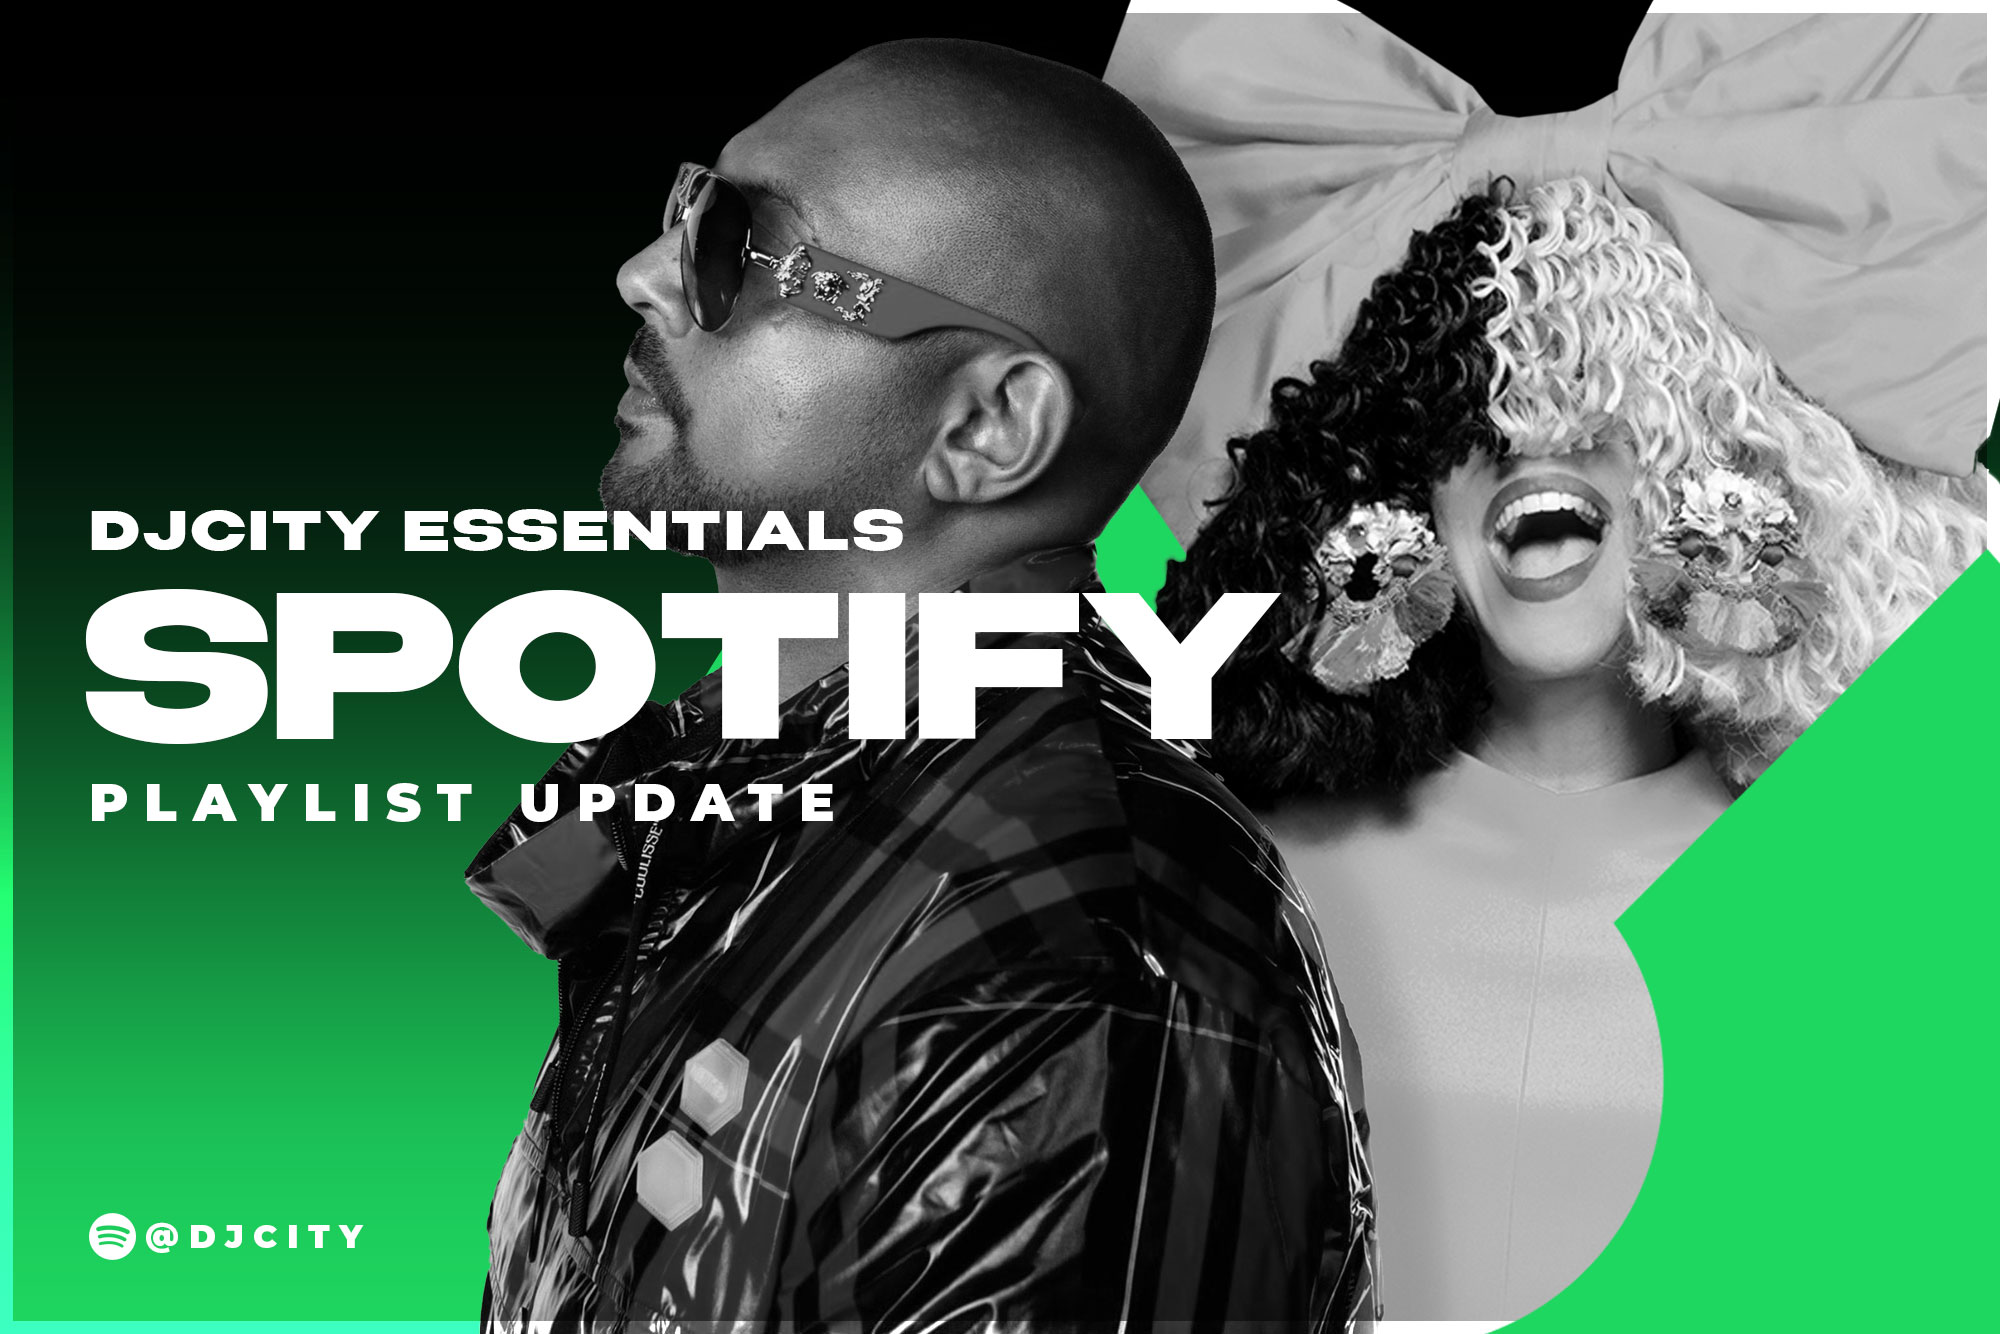 DJcity’s Spotify Playlist Update: Oct. 26